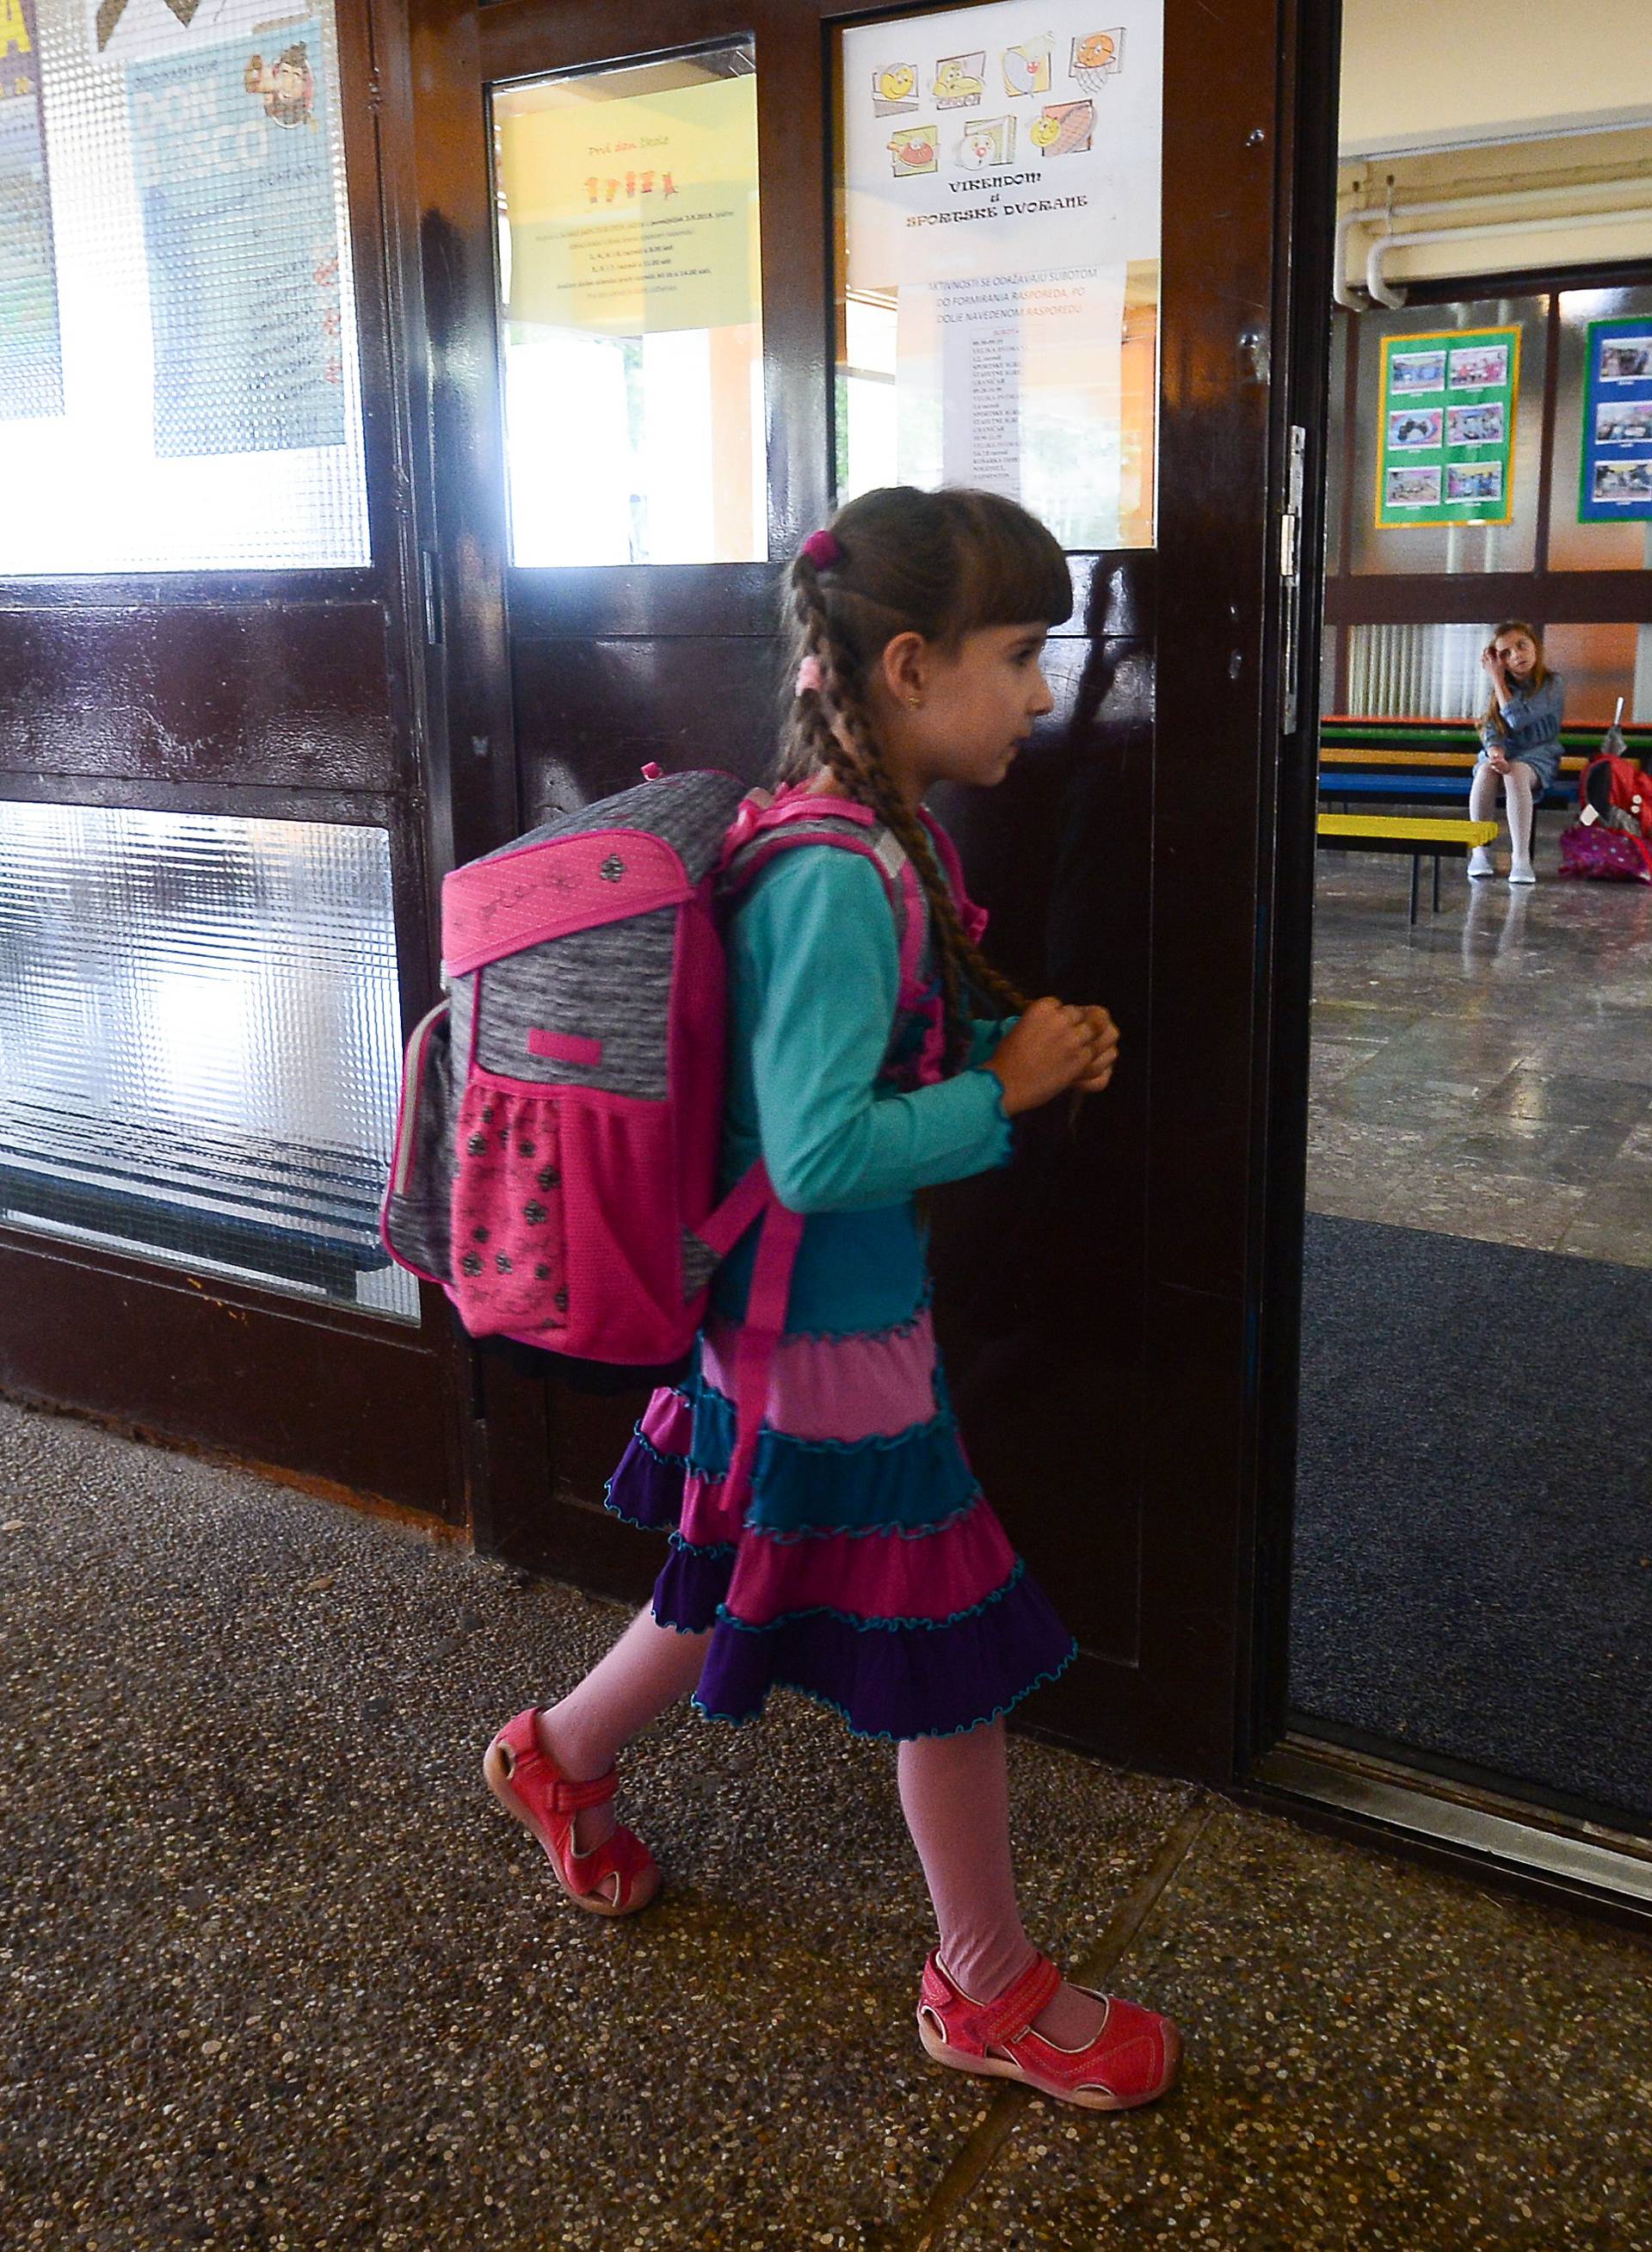 'Uništili su joj prvi dan škole, a krivicu žele prebaciti na mene'